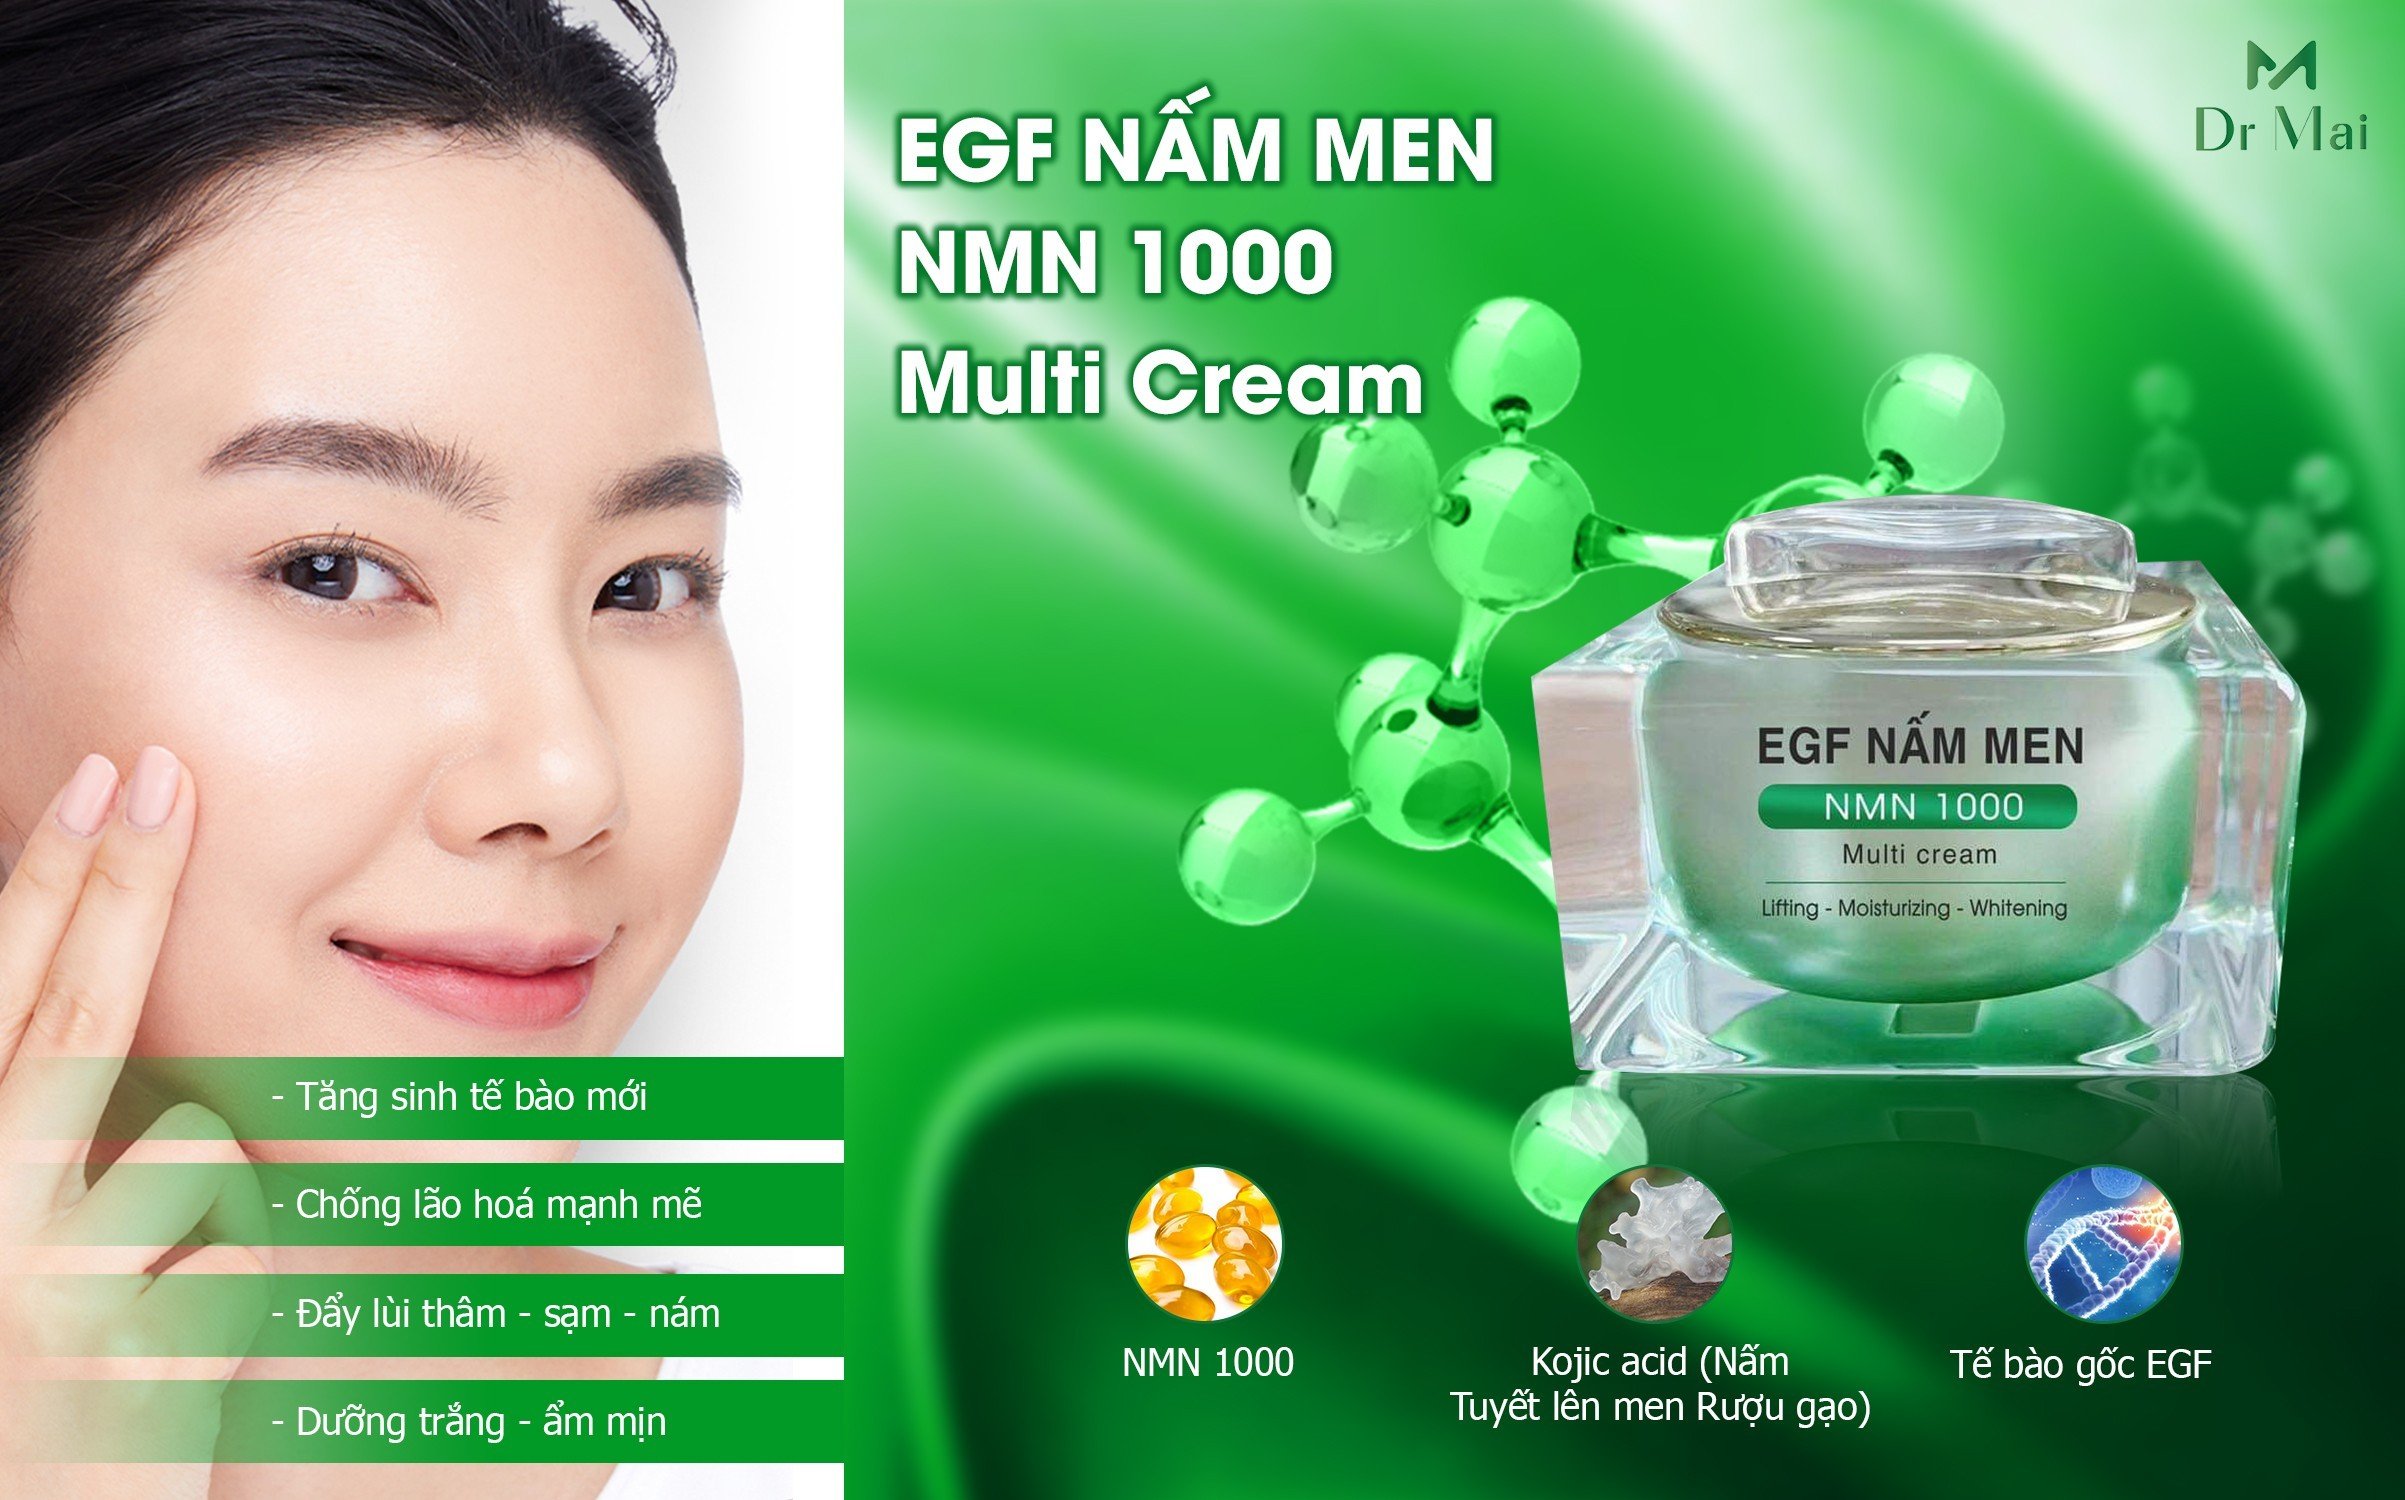 Kem EGF Nấm Men Nmn 1000 giúp dưỡng trắng, ngừa lão hóa